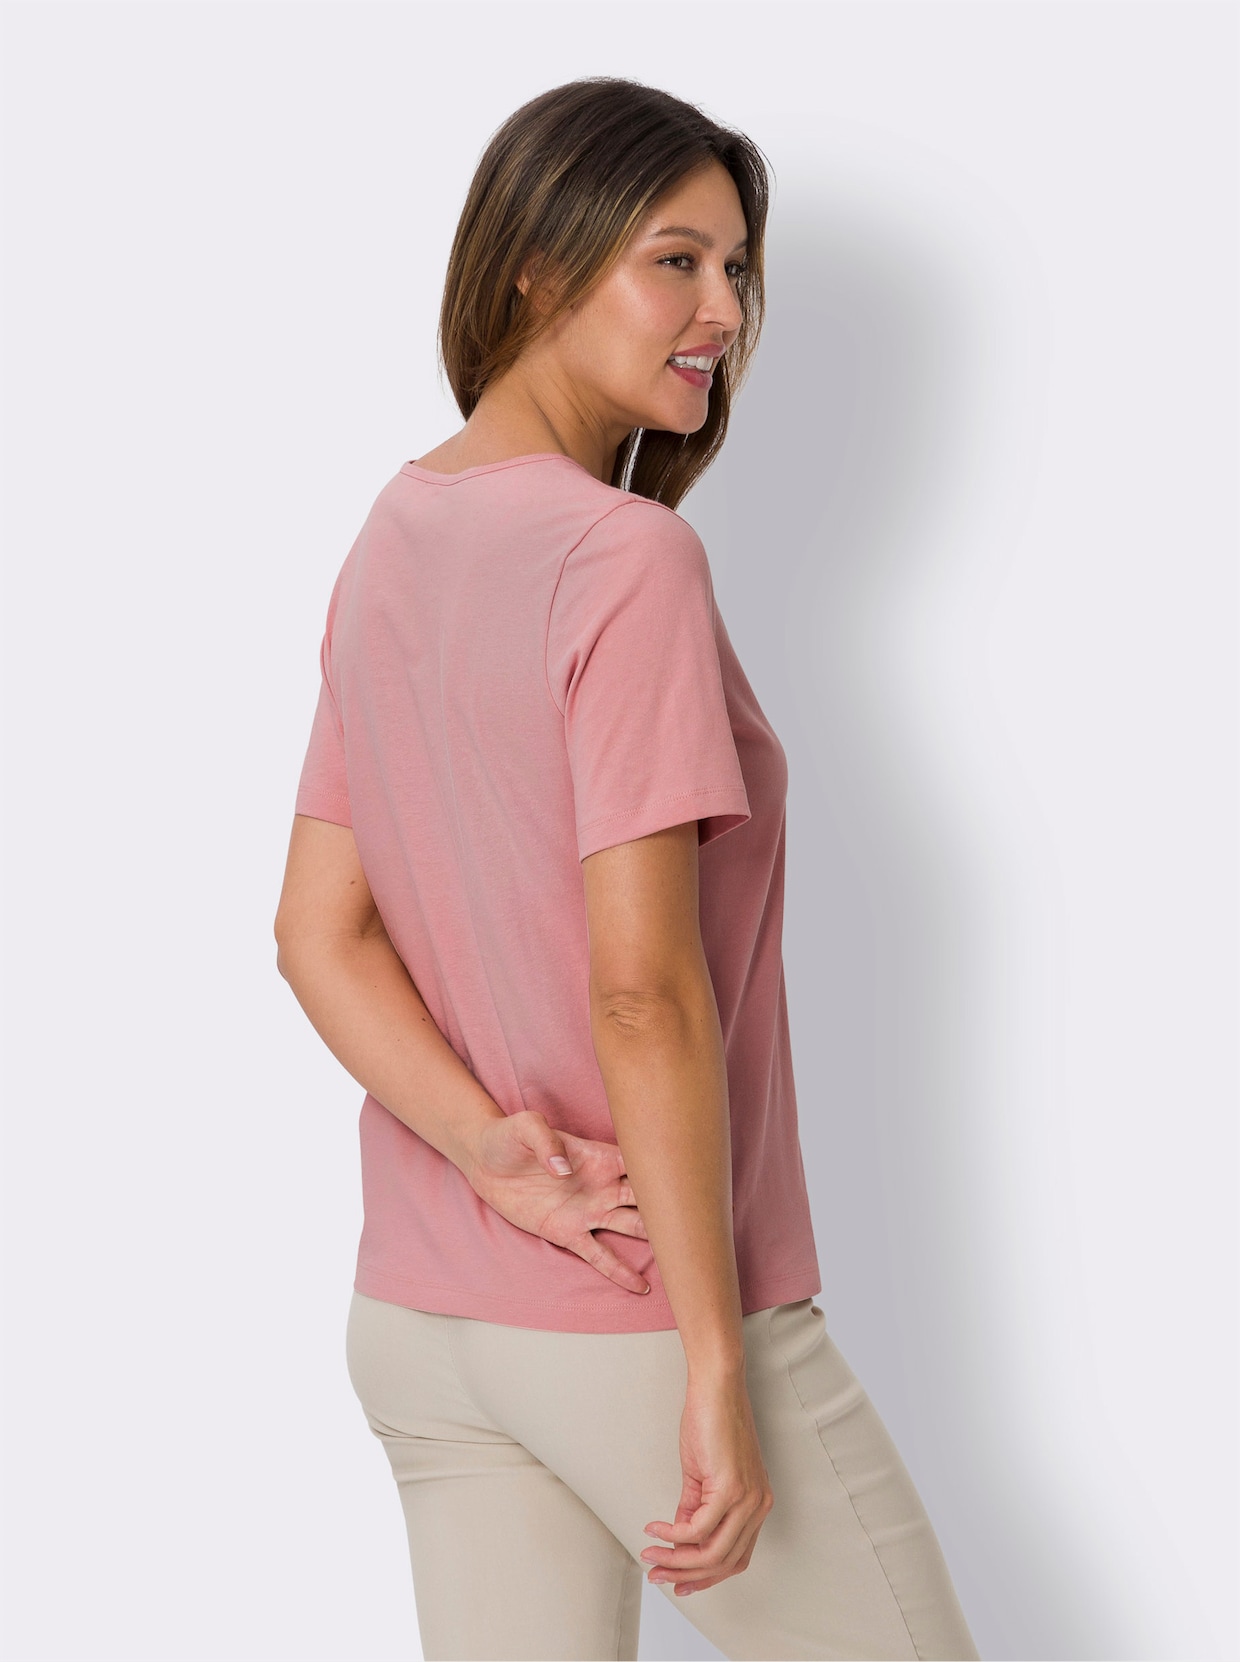 Tričko s krátkým rukávem - růženínová-antracitová